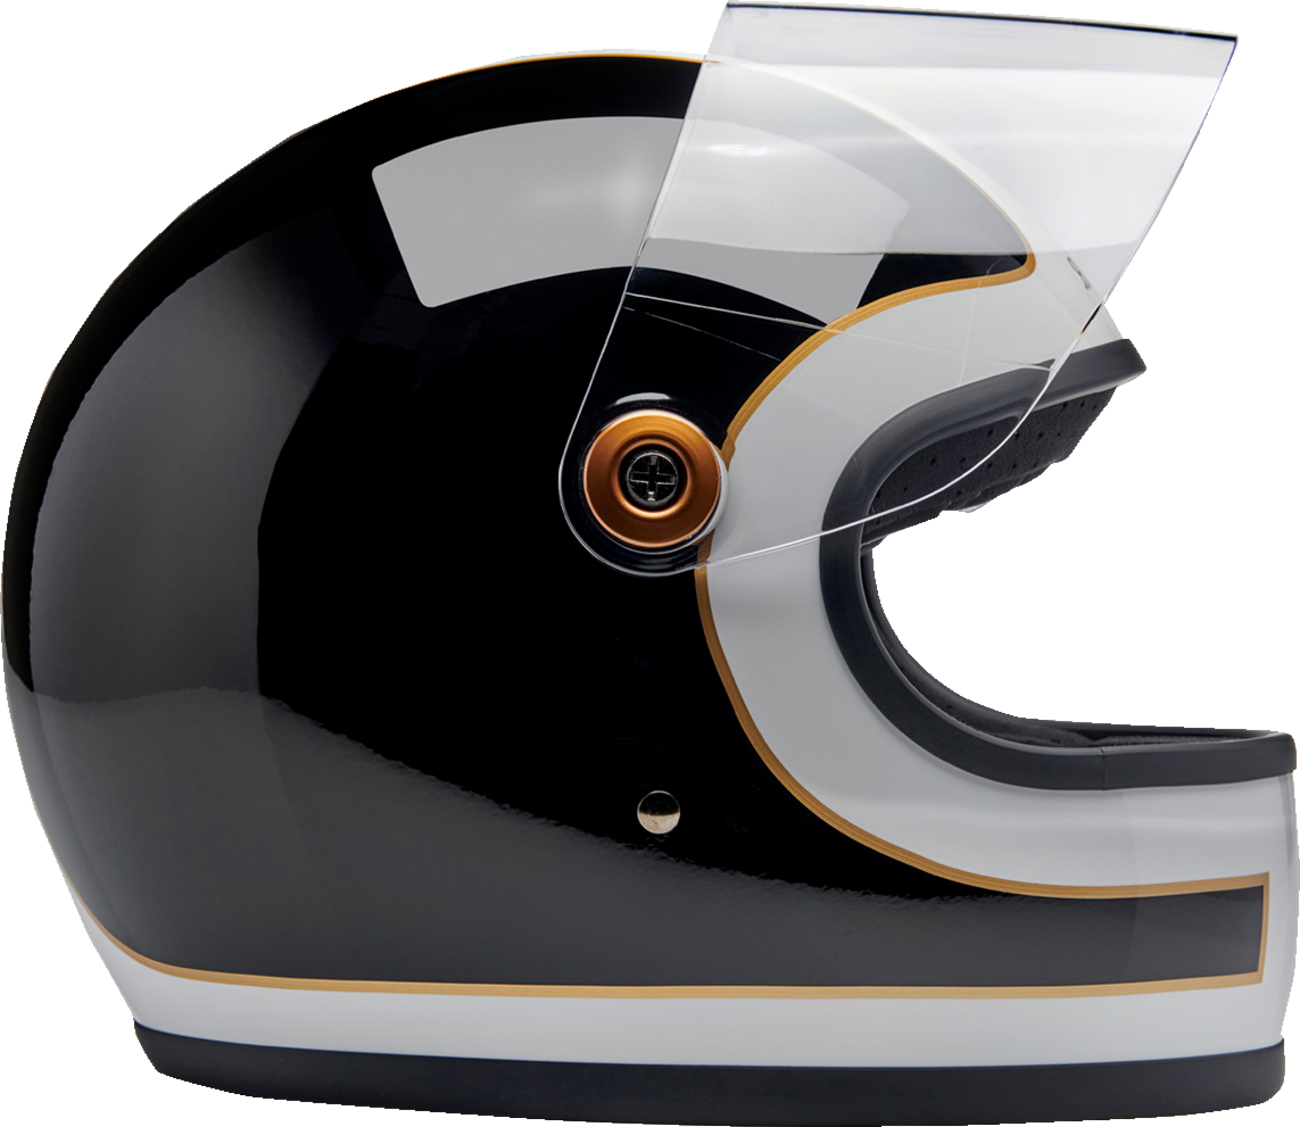 BILTWELL Gringo S Helmet - Gloss White/Black Tracker - Large 1003-566-504